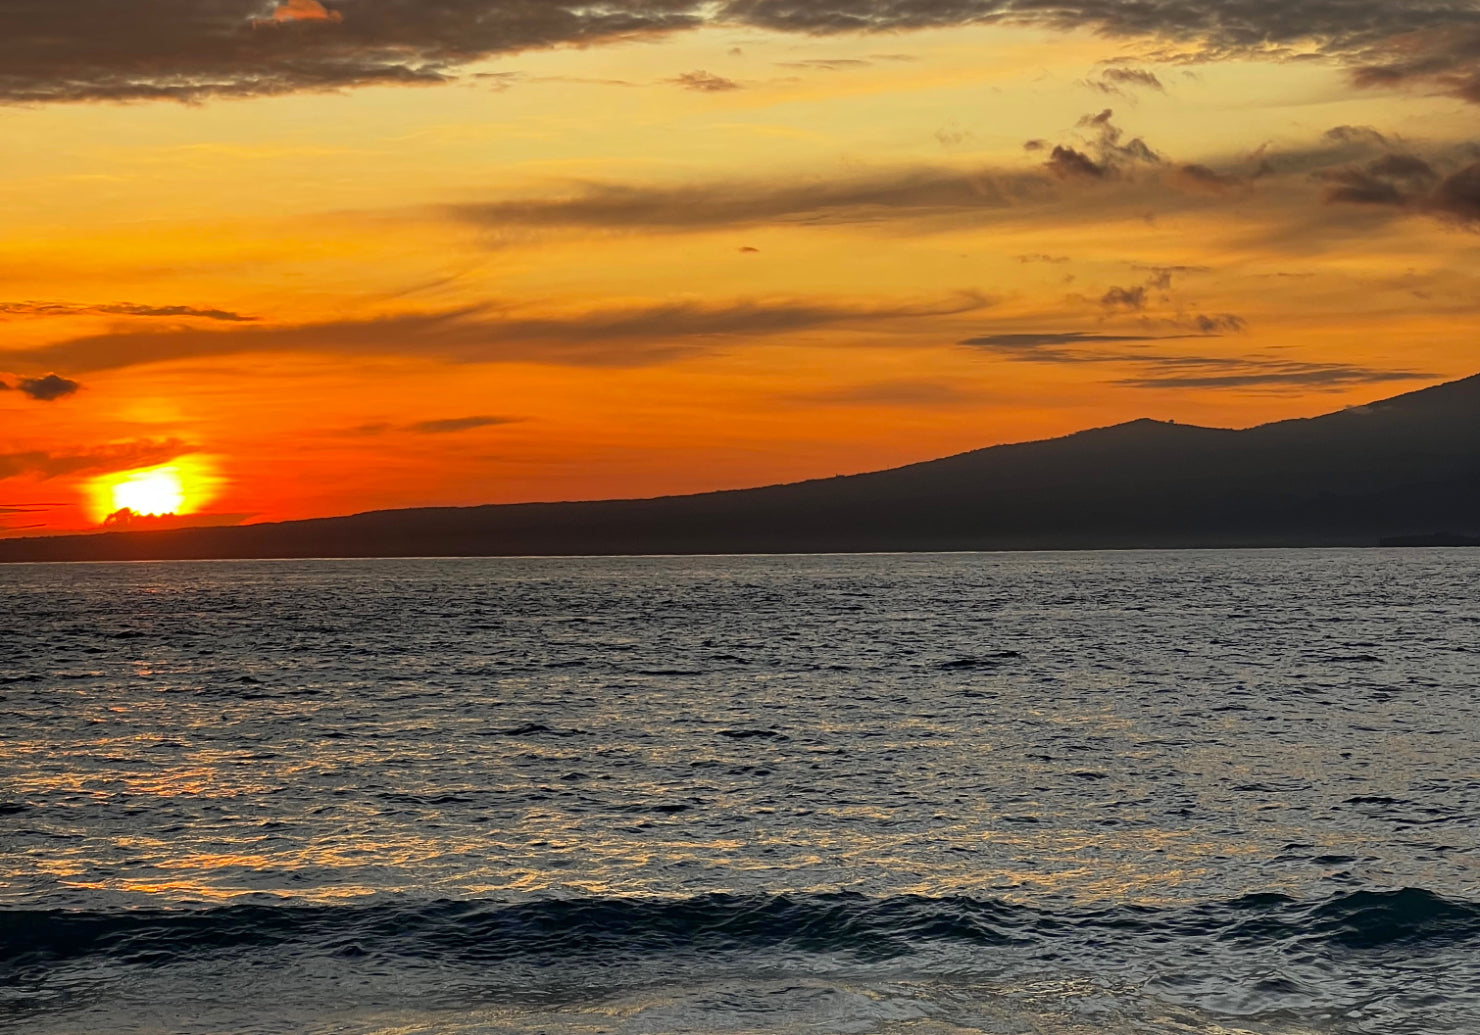 Sunrise in Gili Meno courtesy of Koraru Sustainable Swimwear